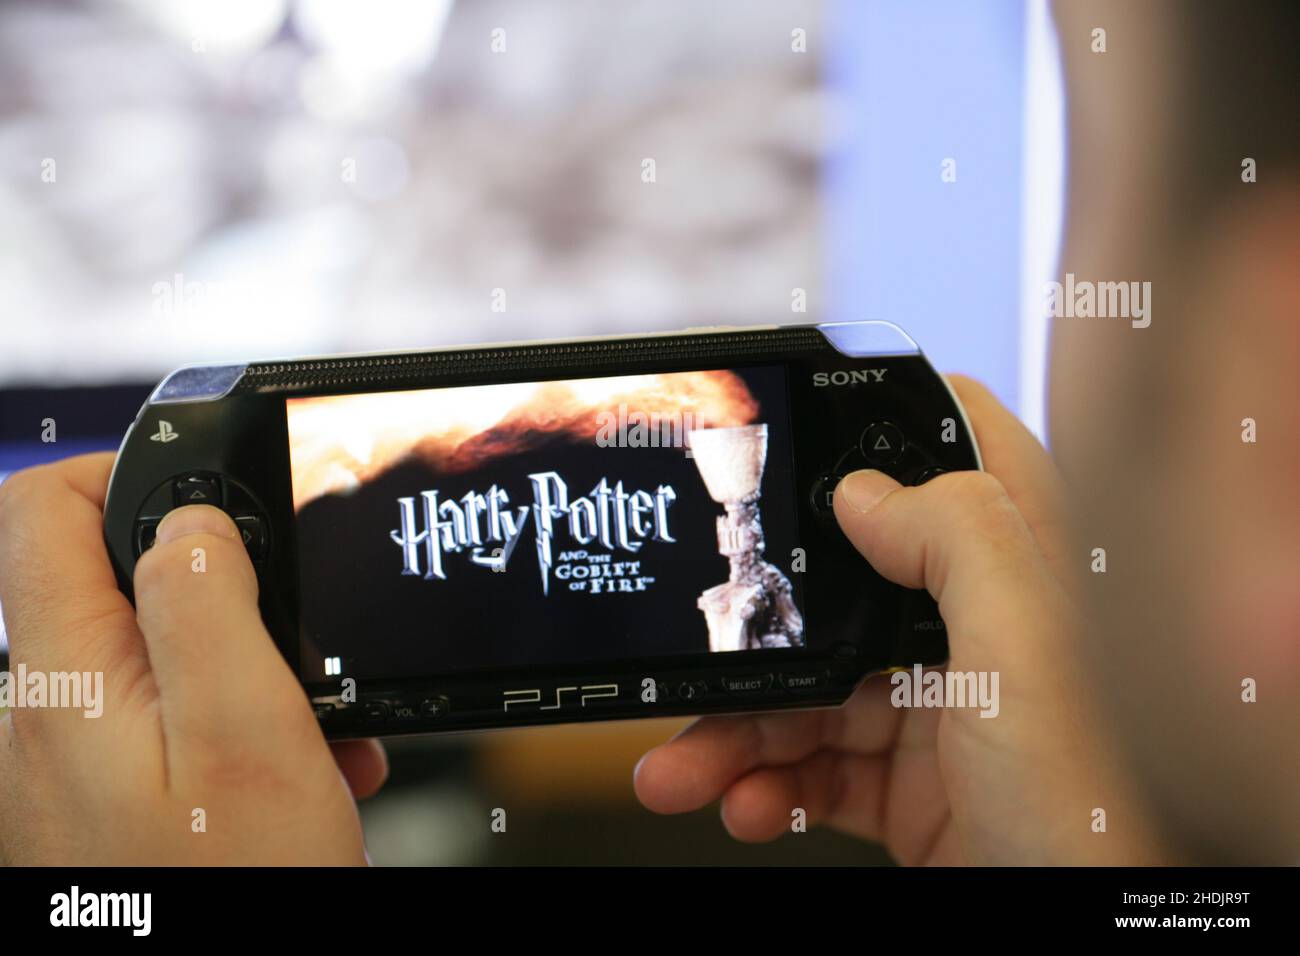 PSP-portabel PlayStation - Harry Potter jeu .Electronic Arts développeur de jeux vidéo étaient responsables de la création des jeux vidéo Harry Potter. Banque D'Images